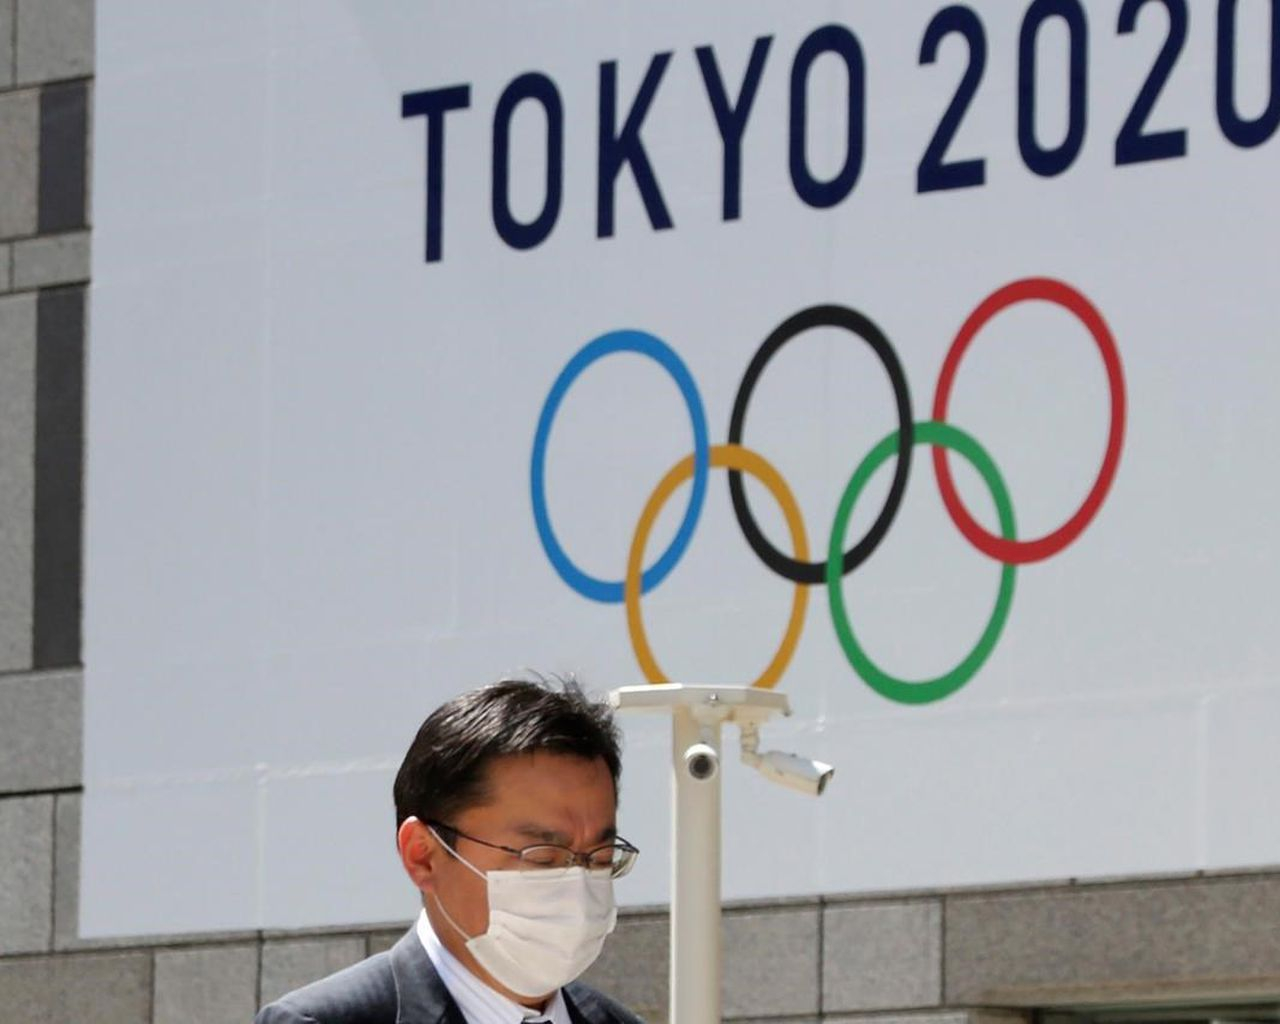 СМИ: Открытие Олимпиады в Токио состоится 23 июля 2021 года